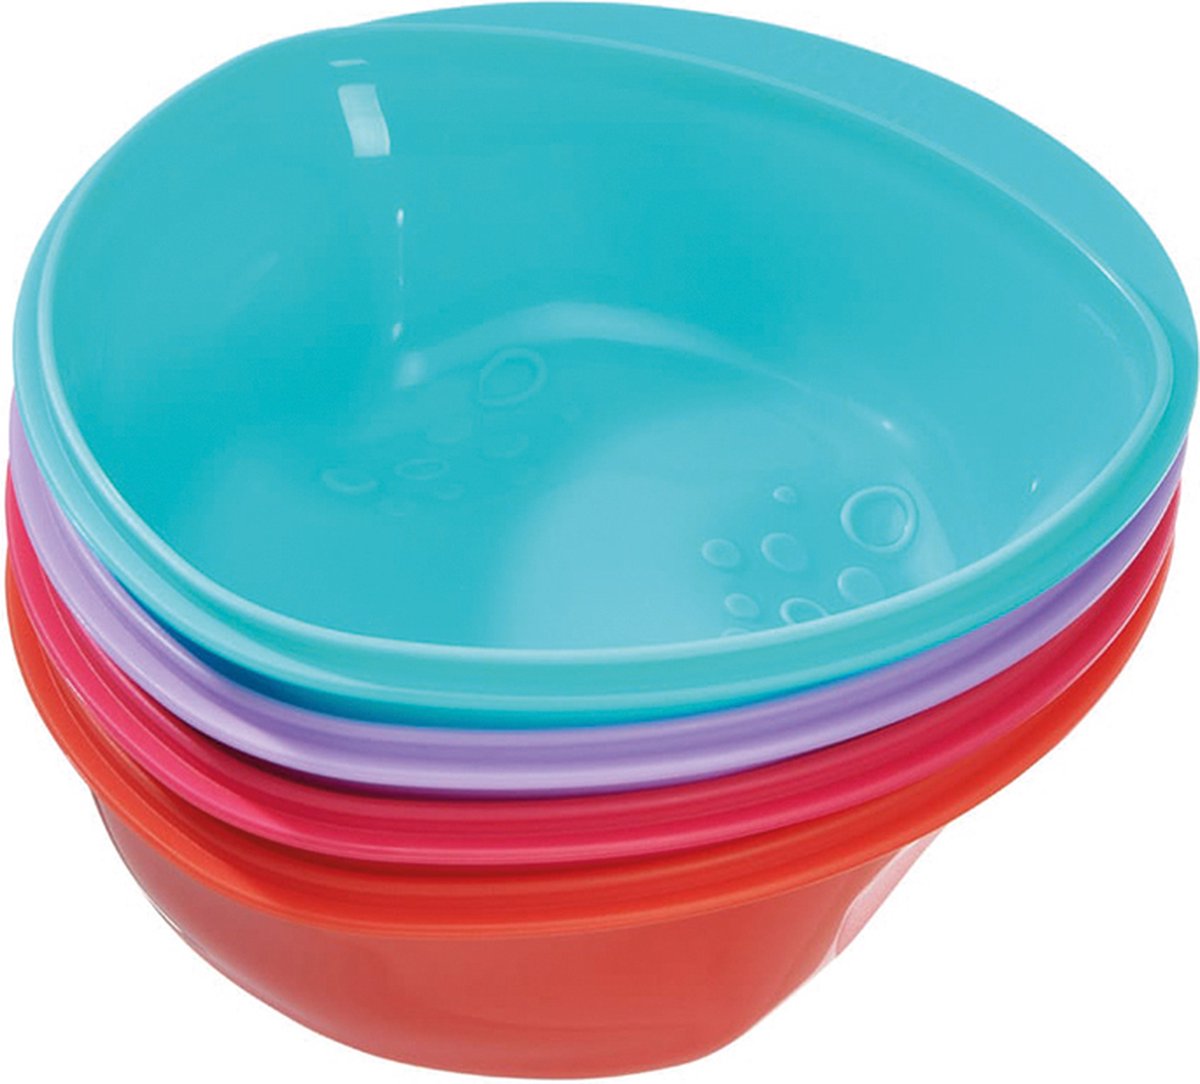 Vital baby - eetkommetje - eetbakje - babykom - met handvat - kunststof - kleurrijk - BPA vrij - set van 4 stuks